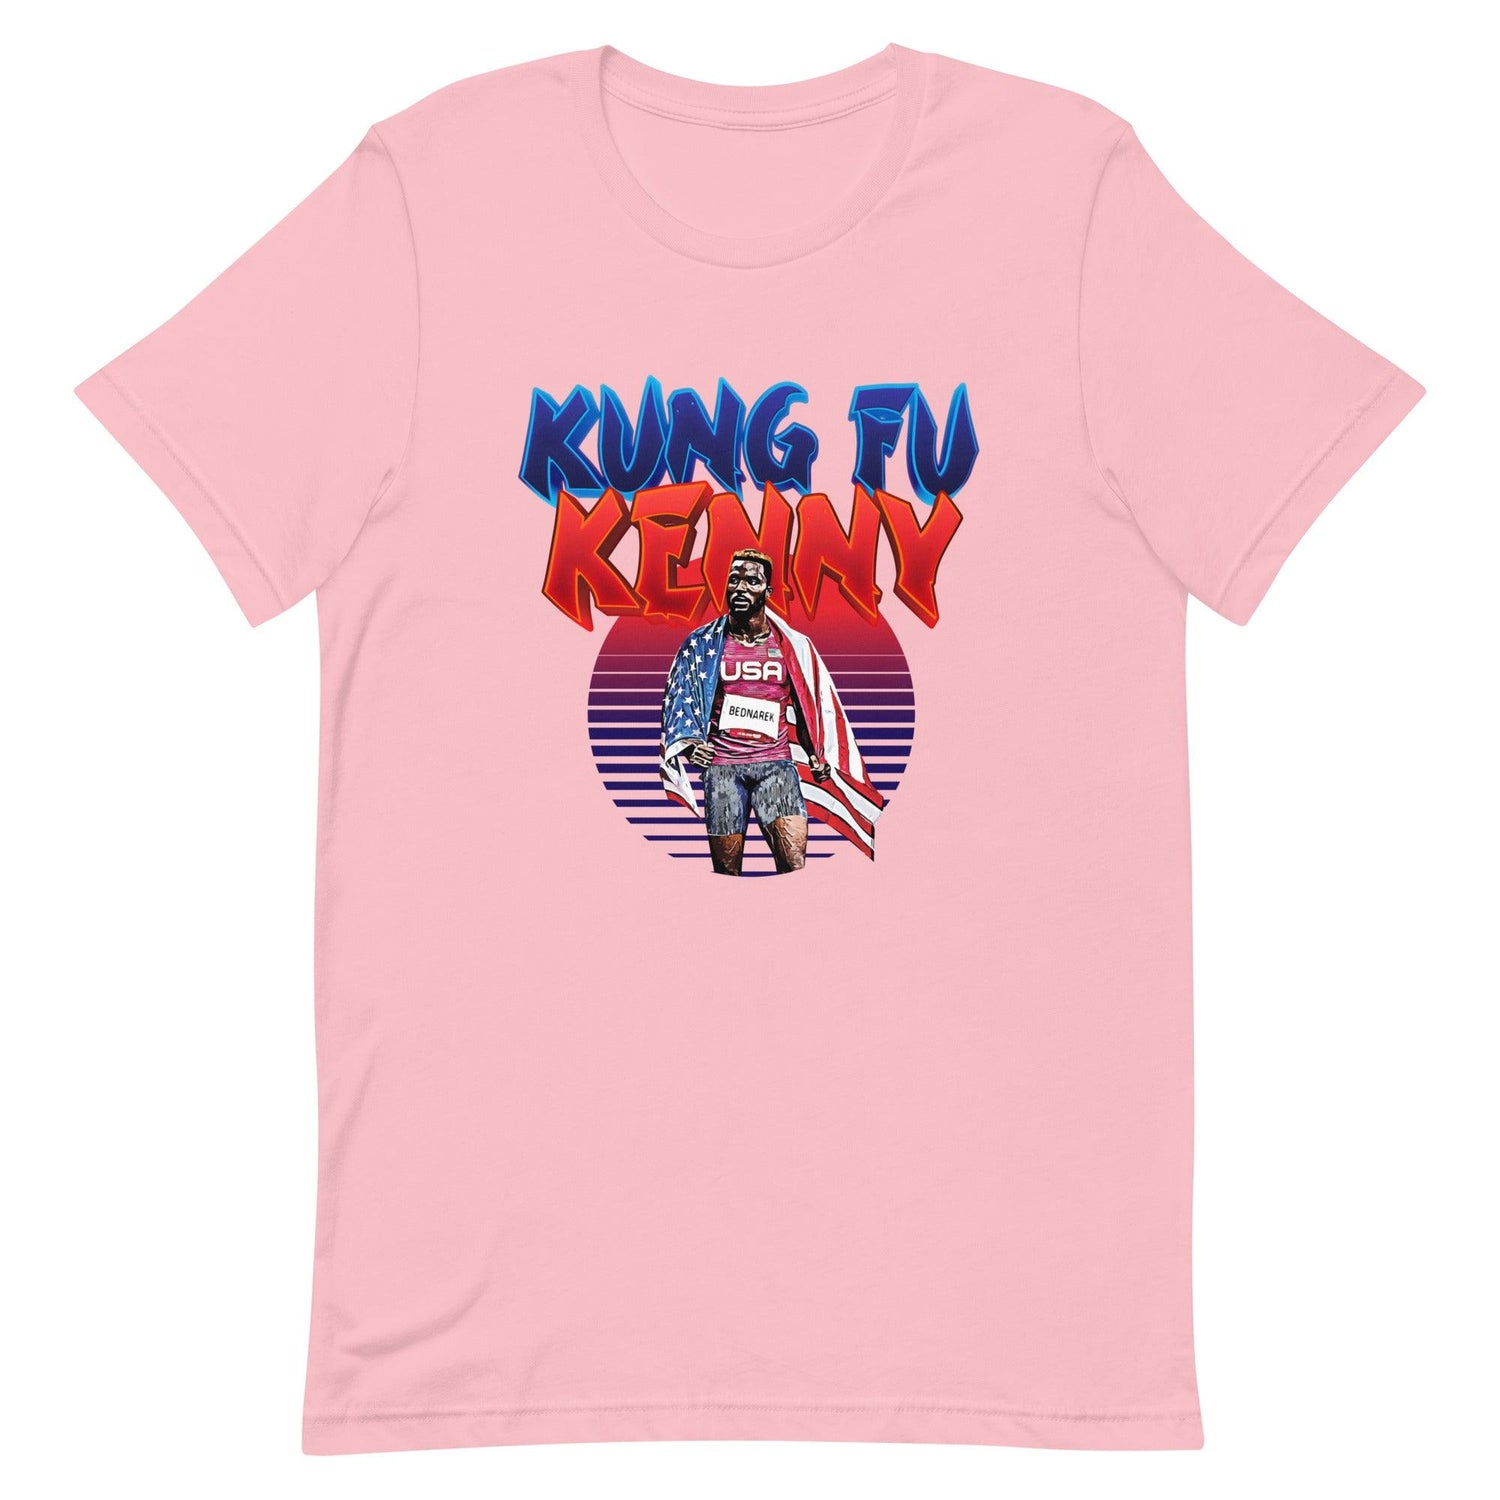 Kenny Bednarek "Kung Fu Kenny" t-shirt - Fan Arch